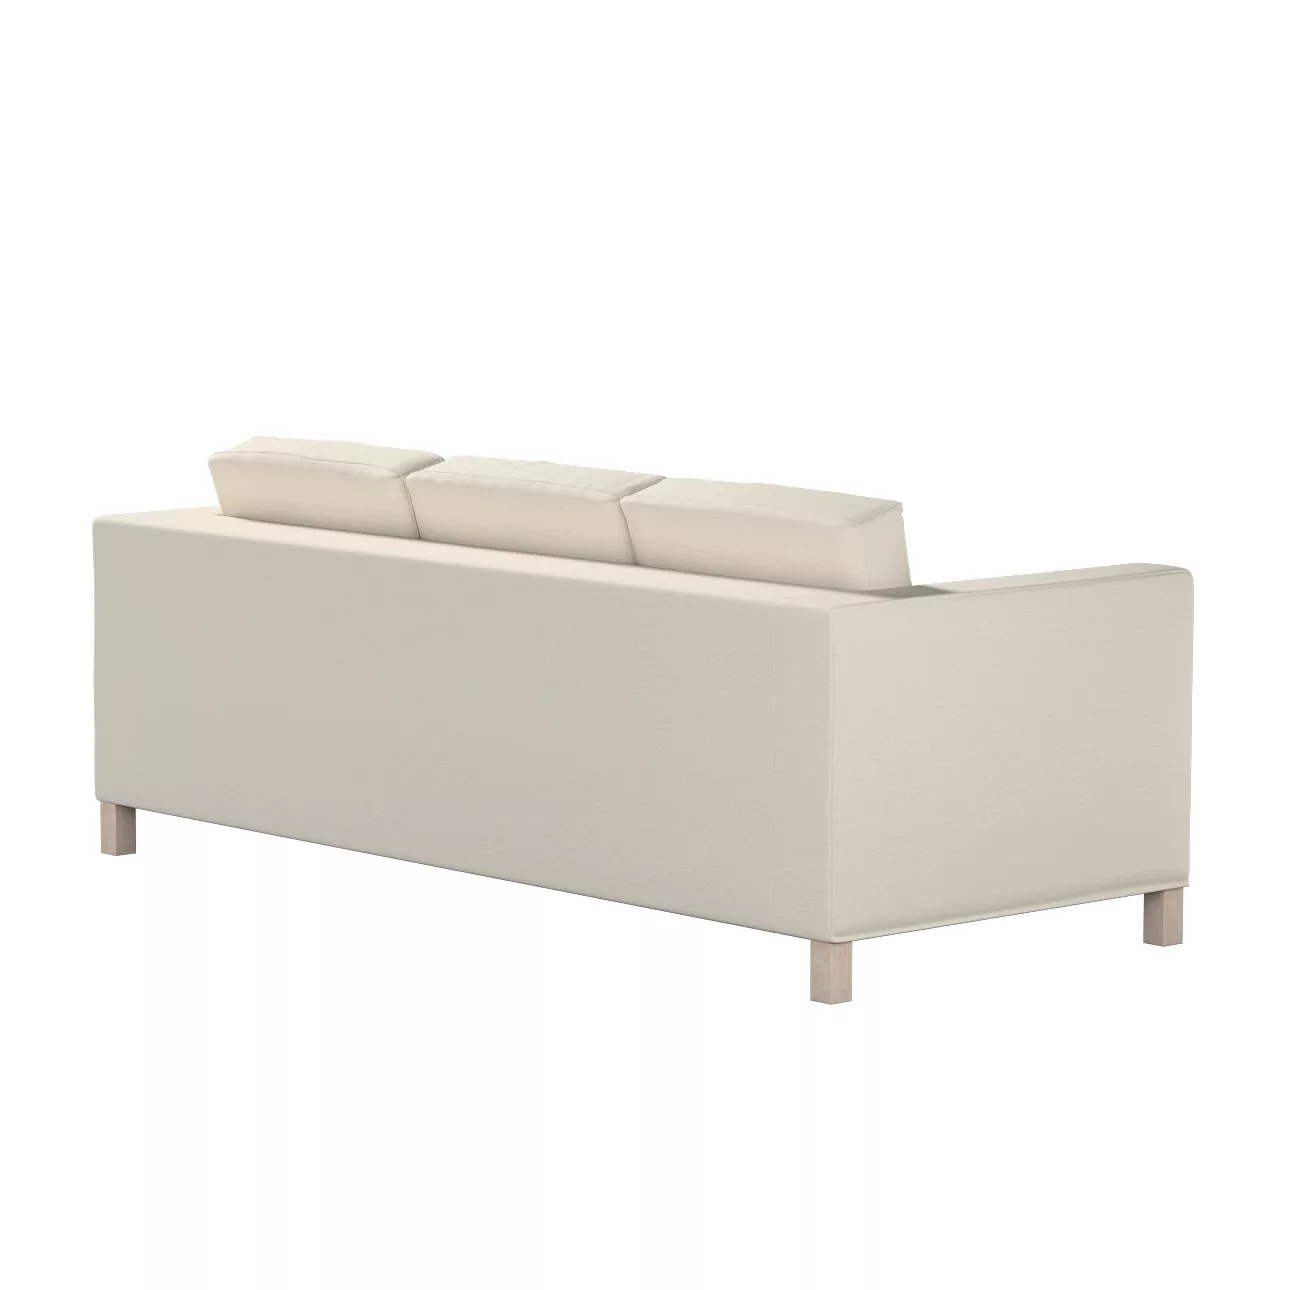 Bezug für Karlanda 3-Sitzer Sofa nicht ausklappbar, kurz, hellbeige, Bezug günstig online kaufen